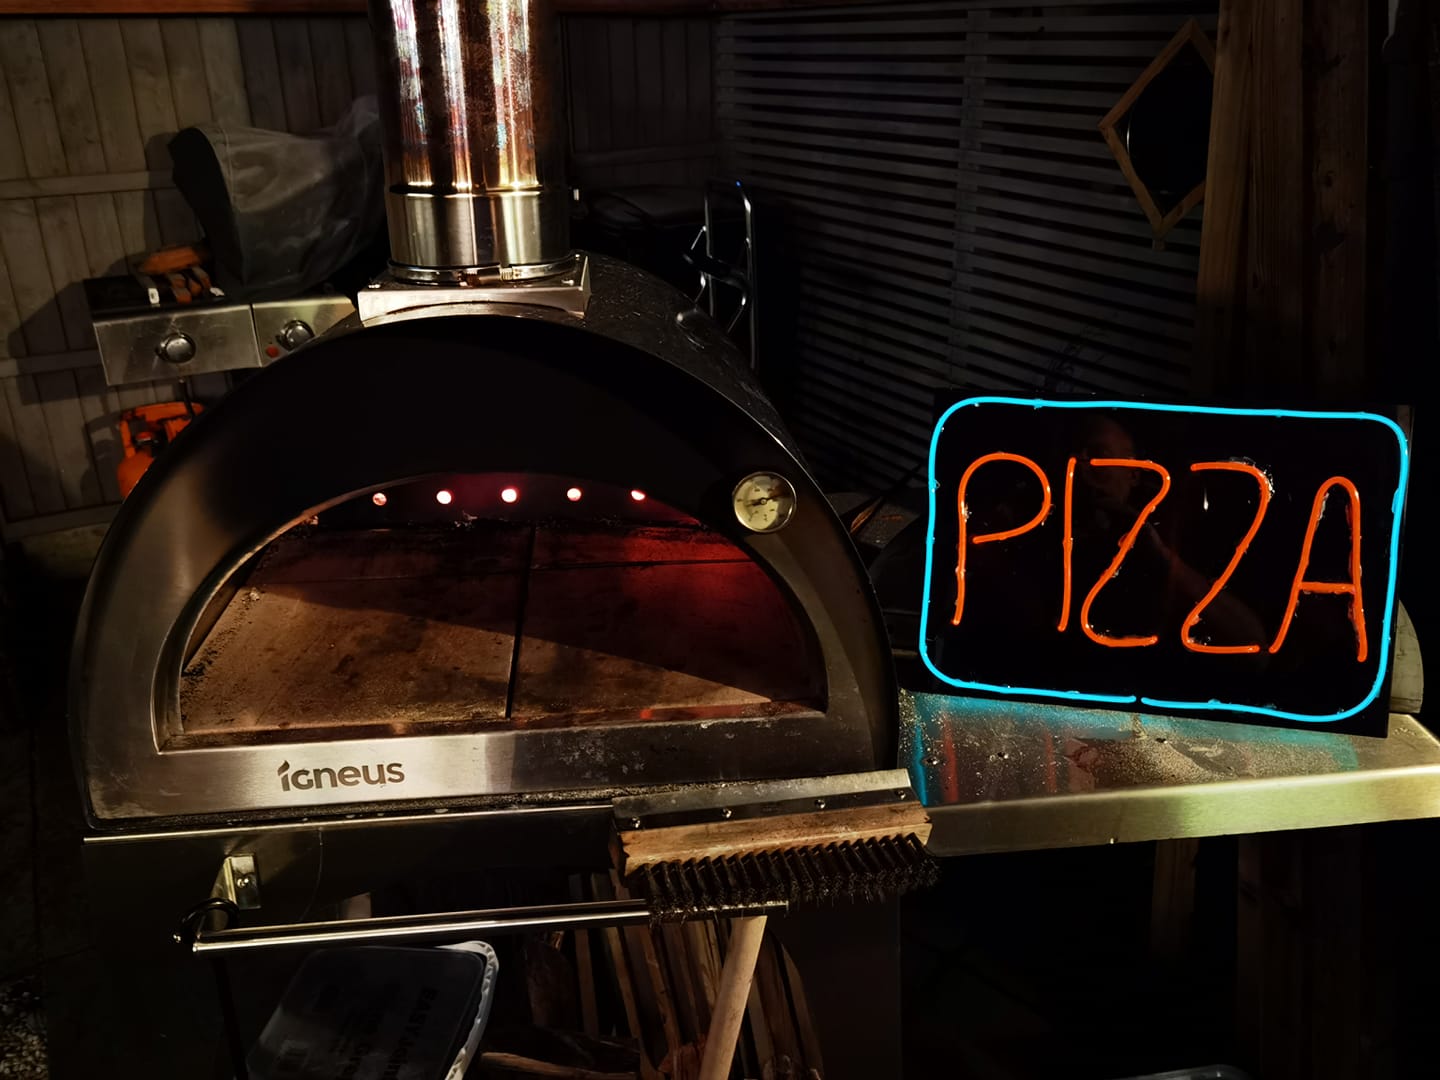 Igneus Classico pizza oven